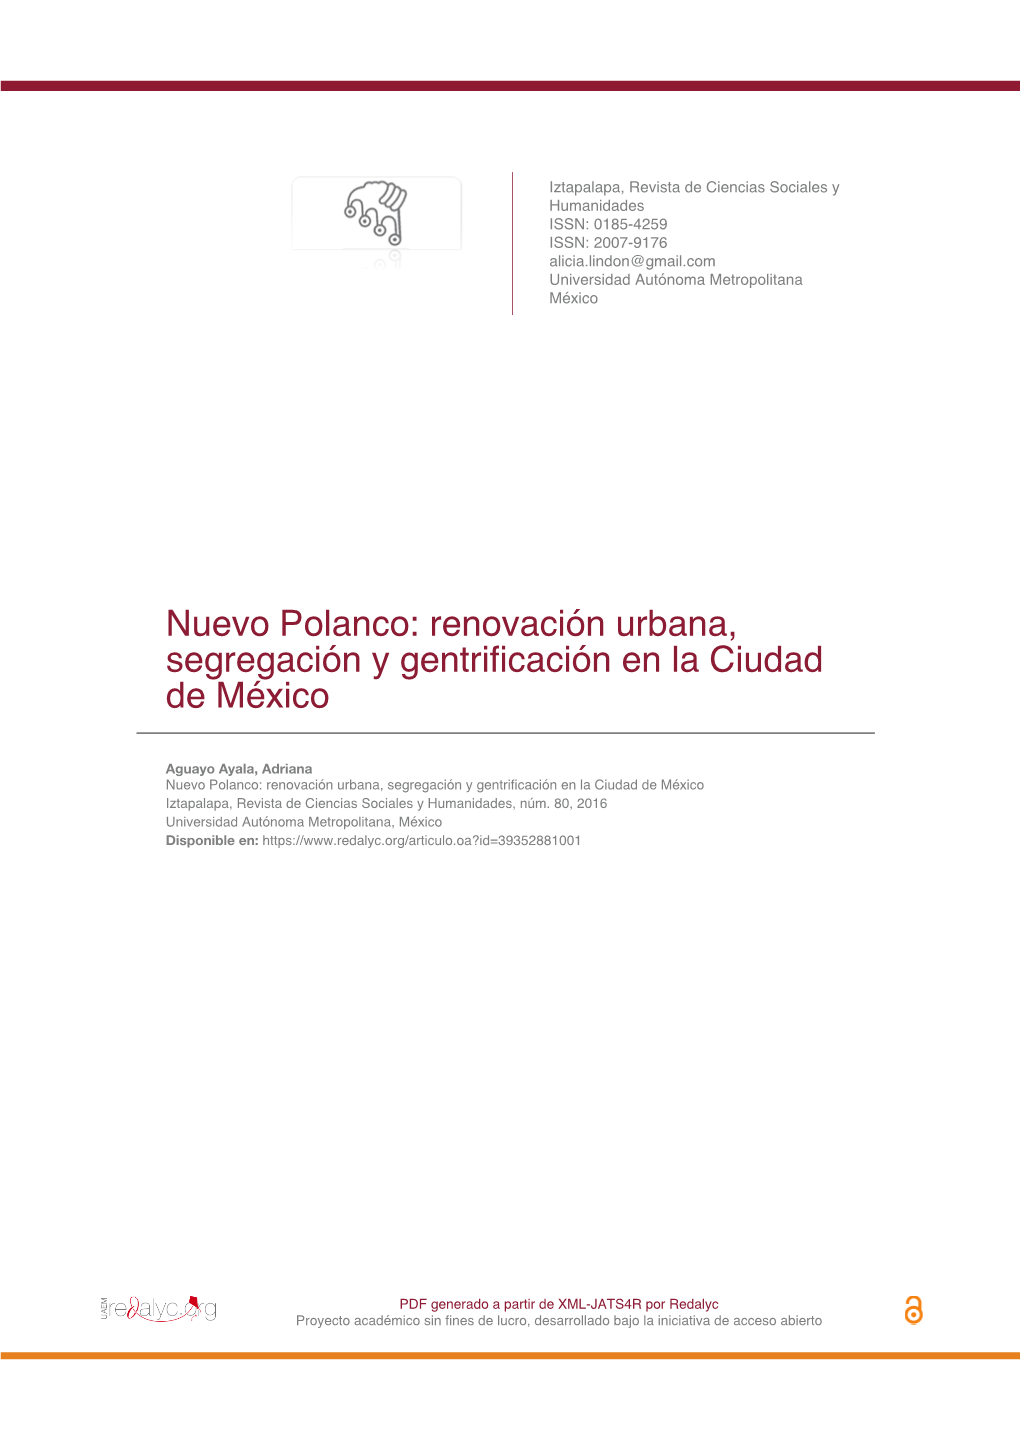 Nuevo Polanco: Renovación Urbana, Segregación Y Gentrificación En La Ciudad De México